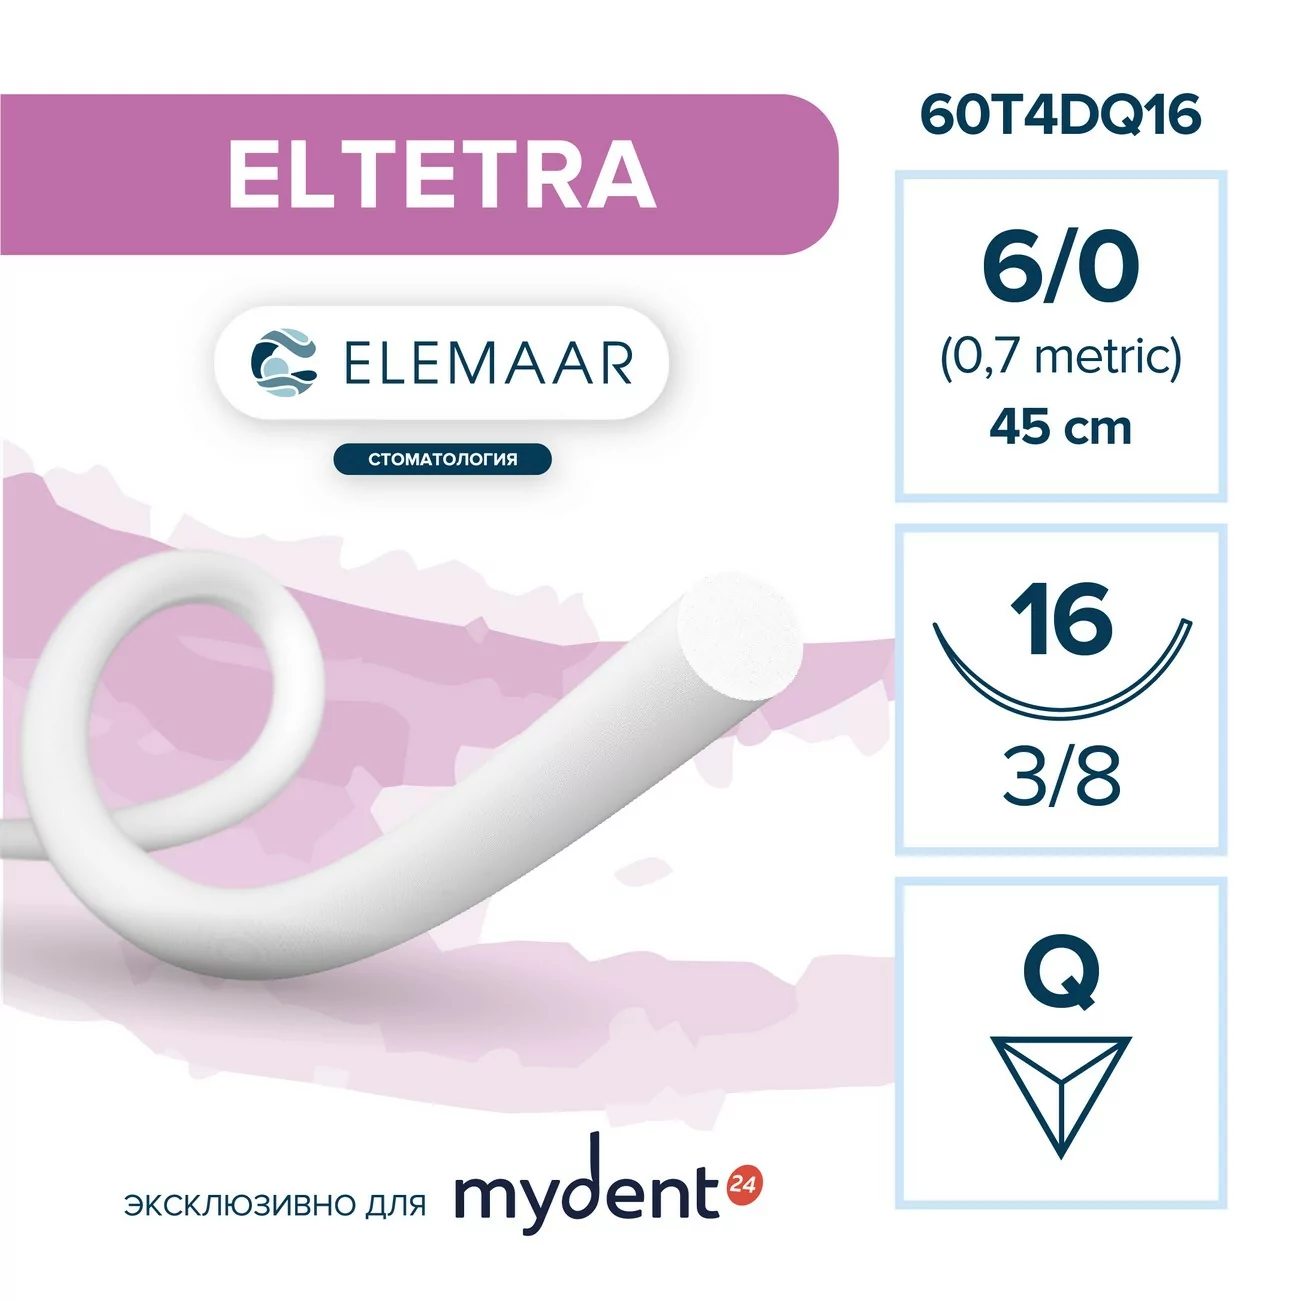 Шовный материал ELTETRA 6/0 (12 шт, 45 см, 3/8, 16 мм, обратно-режущая)